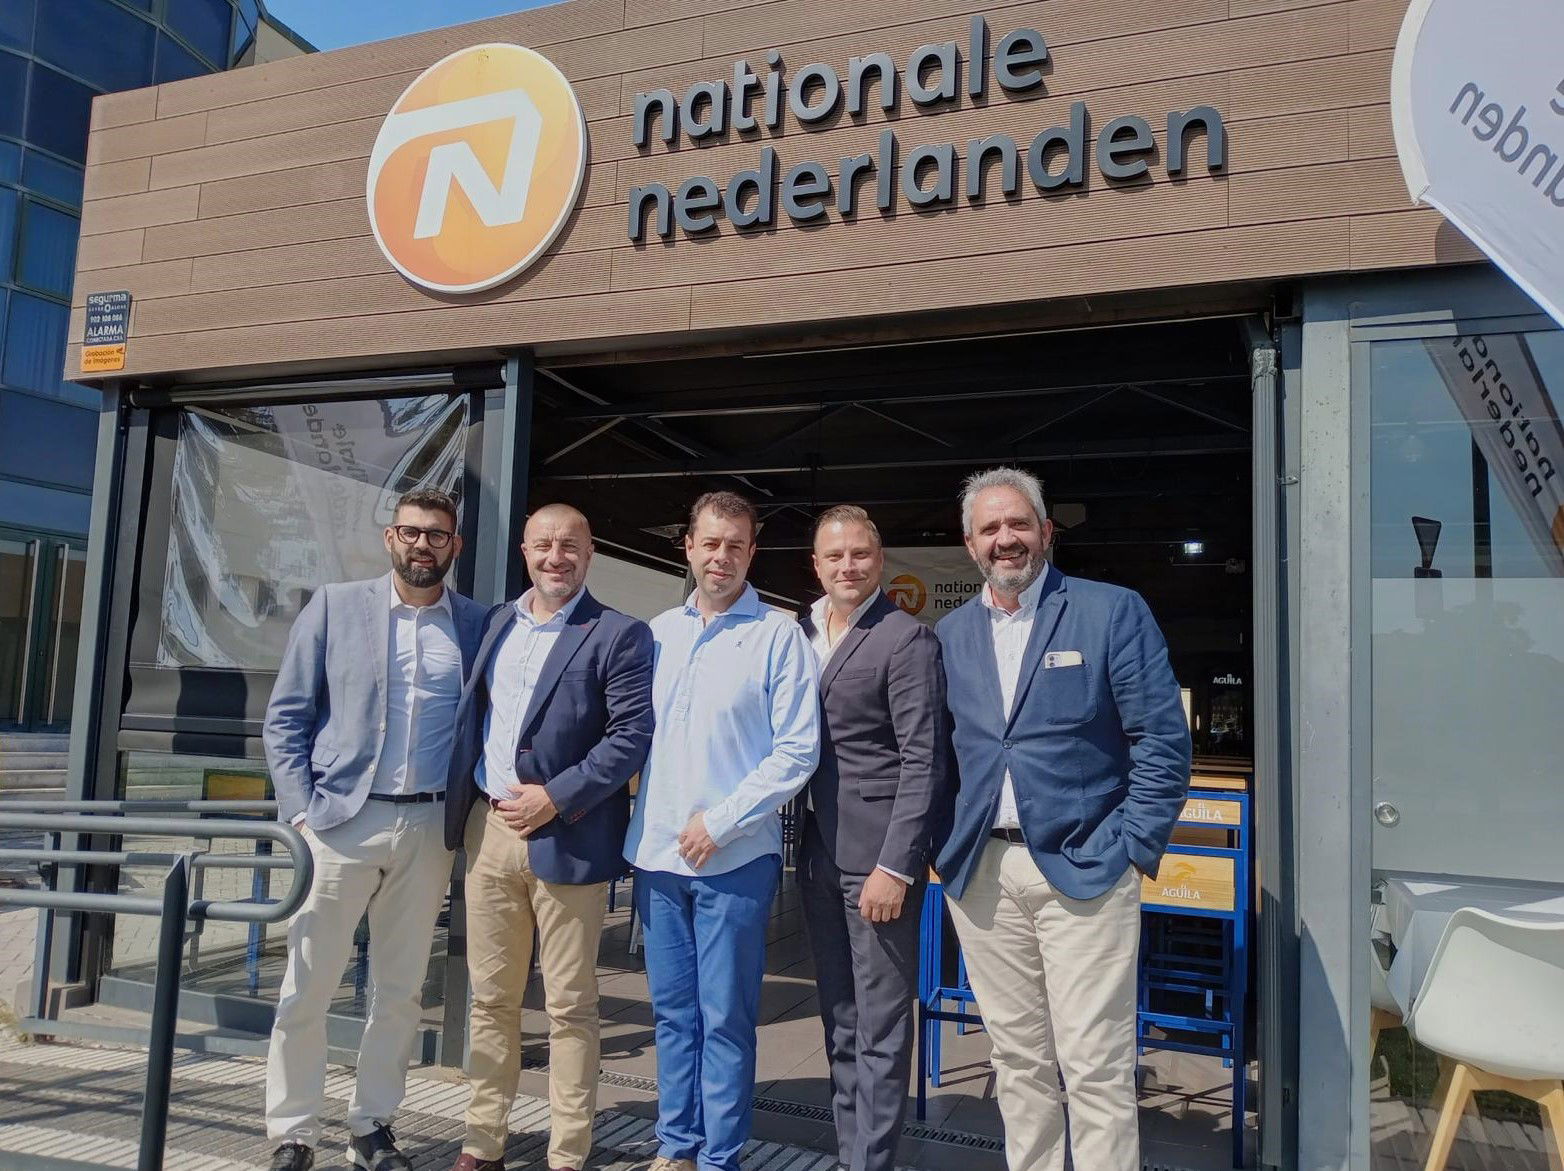 Nationale-Nederlanden abre un Punto Naranja en un restaurante